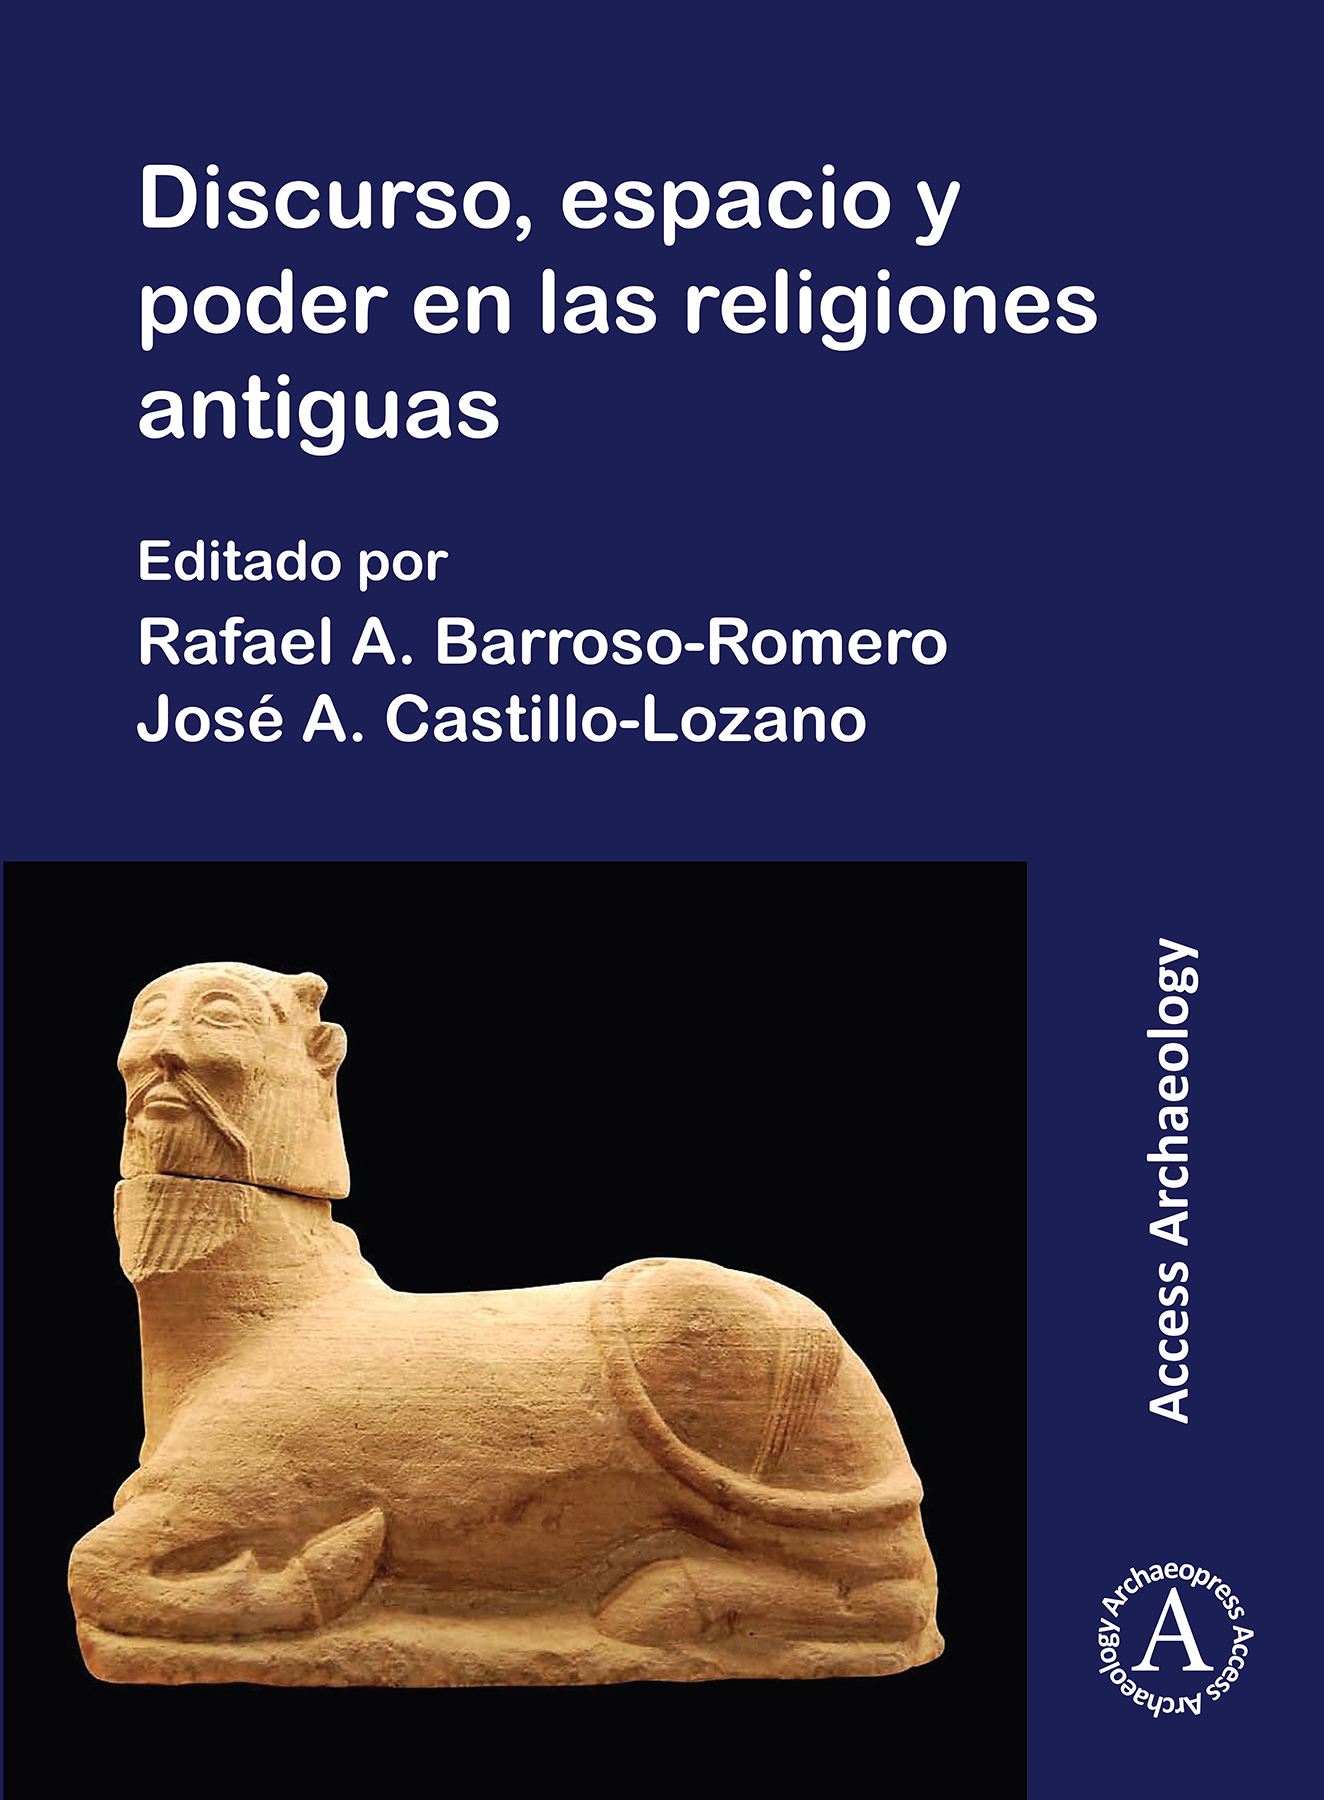 Imagen de portada del libro Discurso, espacio y poder en las religiones antiguas